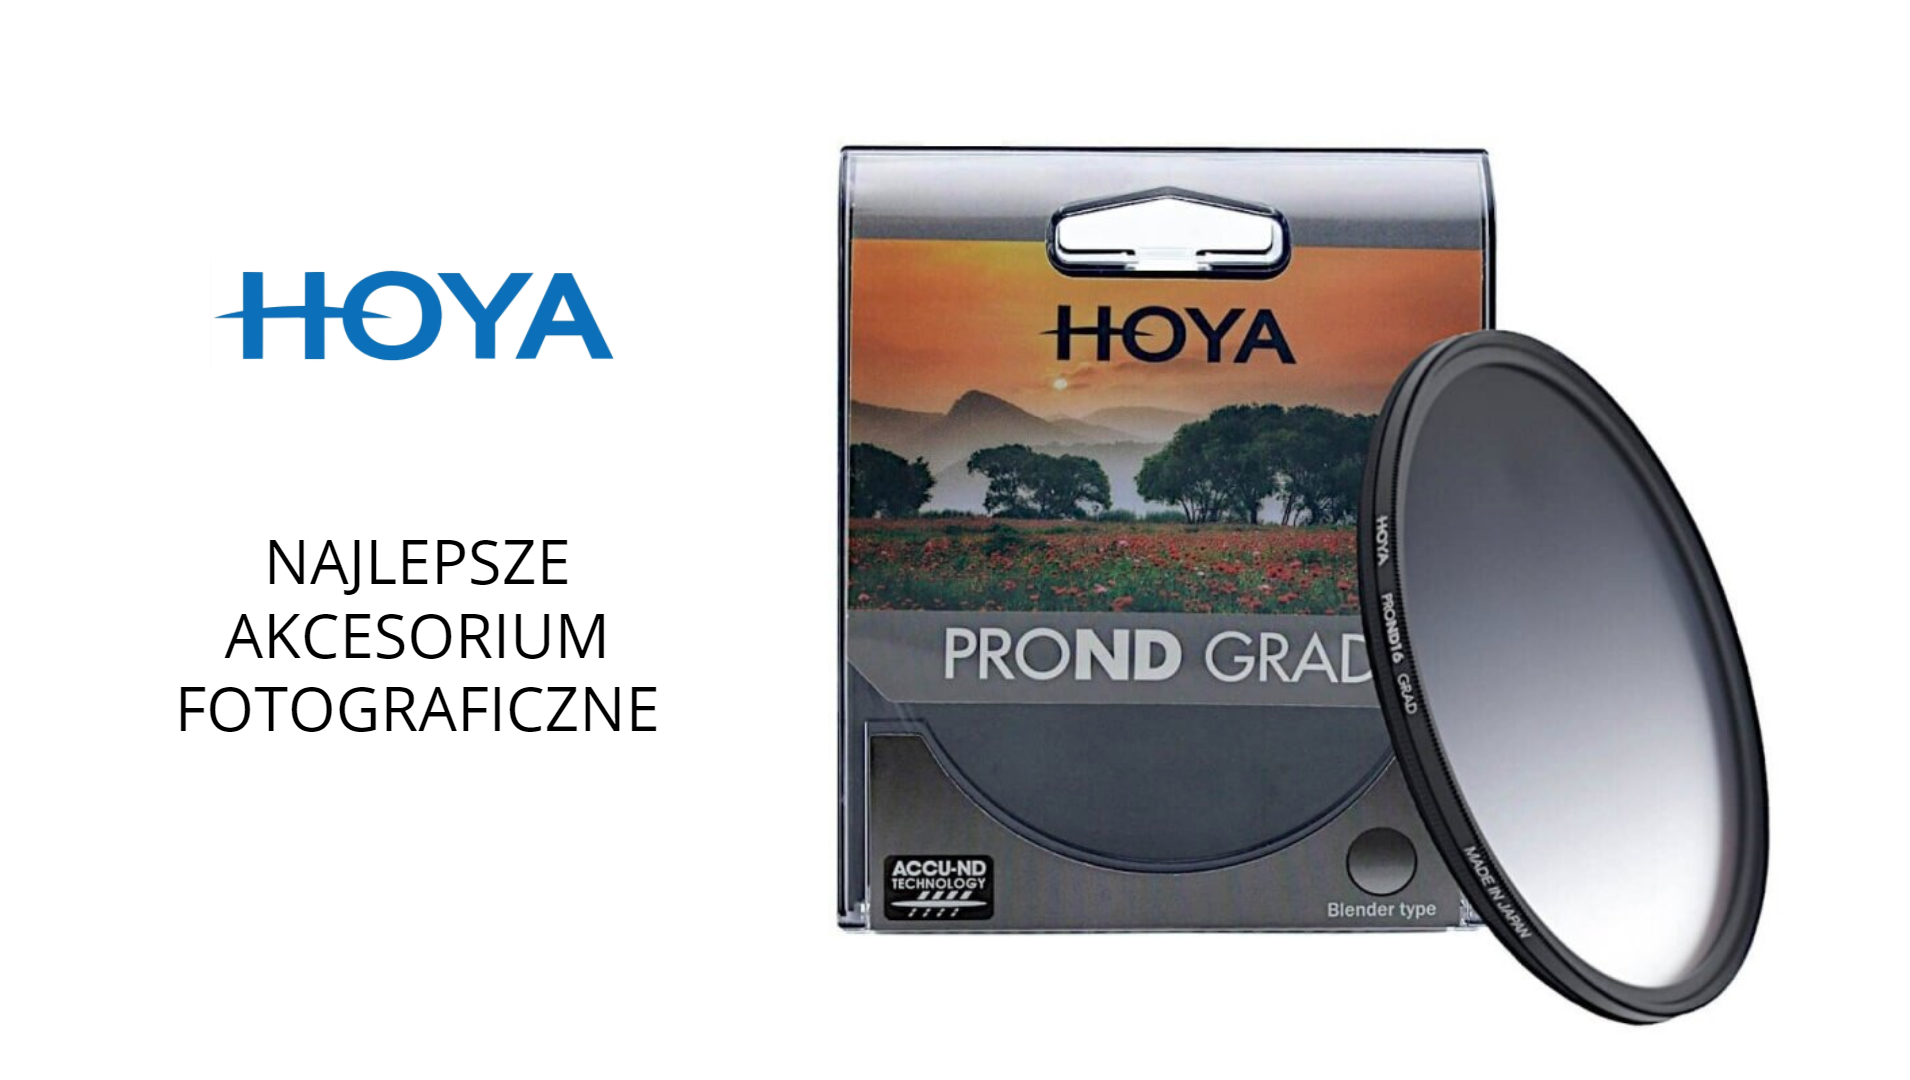 Hoya PROND GRAND z nagrodą TIPA2021